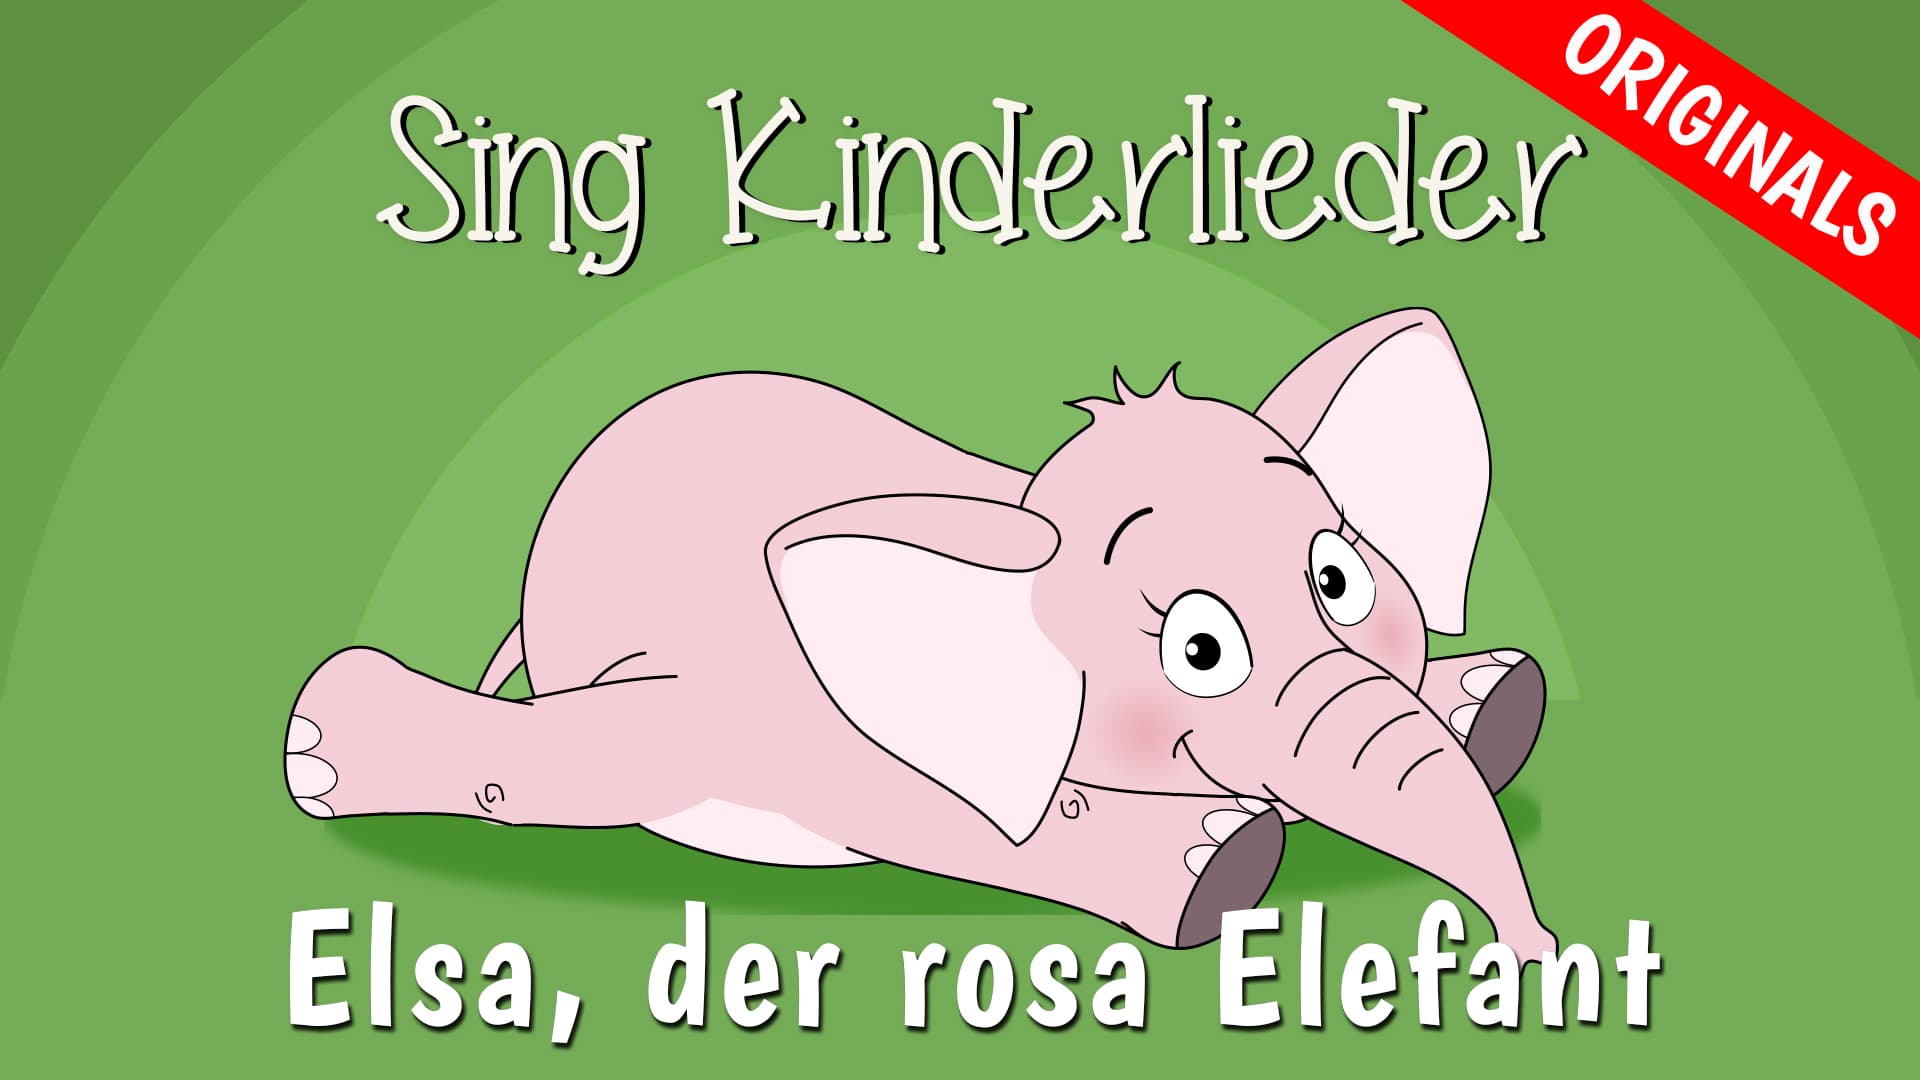 Elsa, der rosa Elefant (Ich hab Dich lieb)